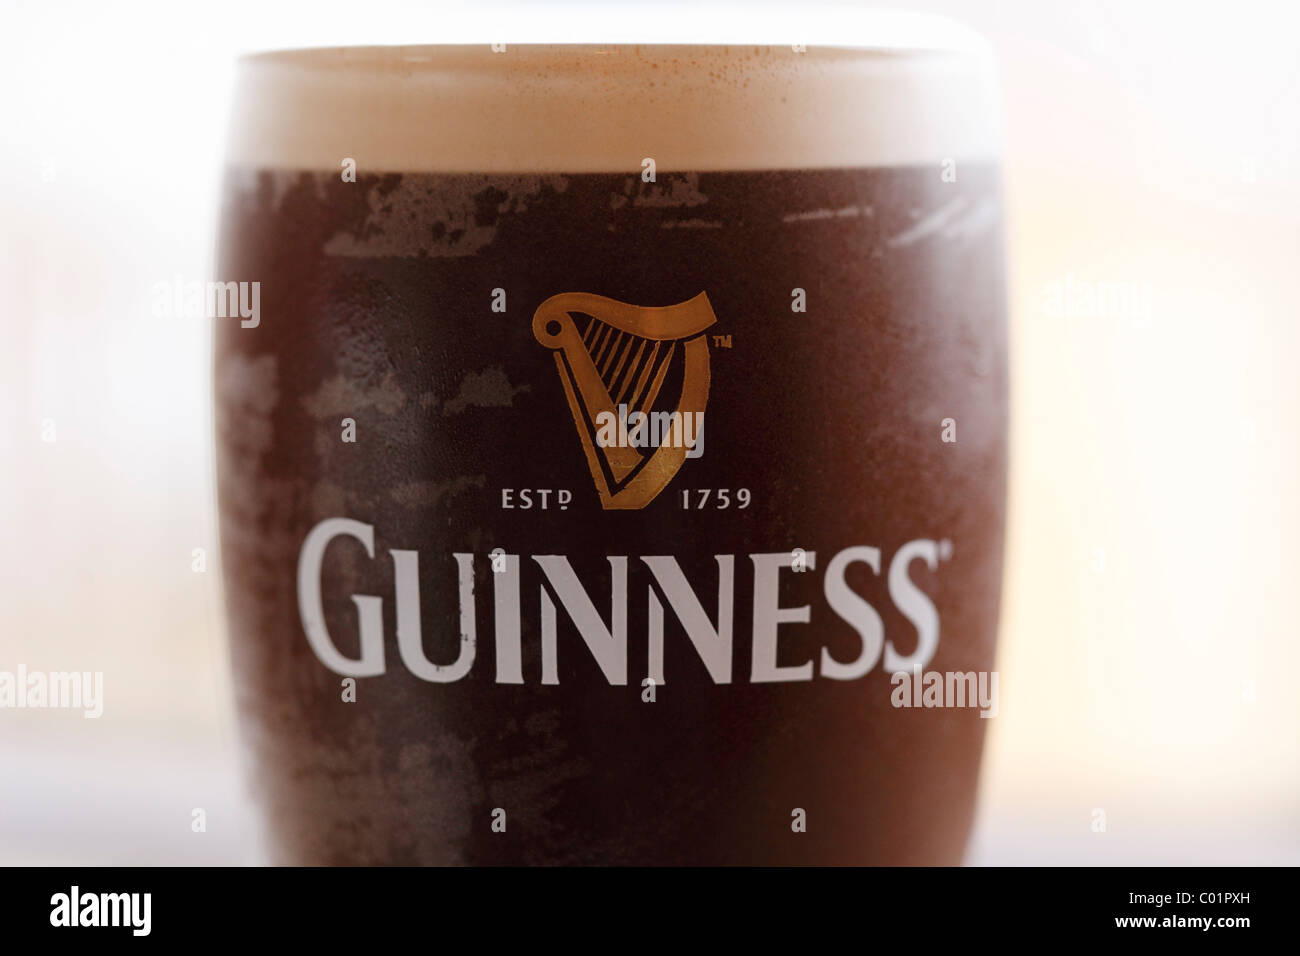 Un verre de bière stout Guinness, République d'Irlande, Europe Banque D'Images